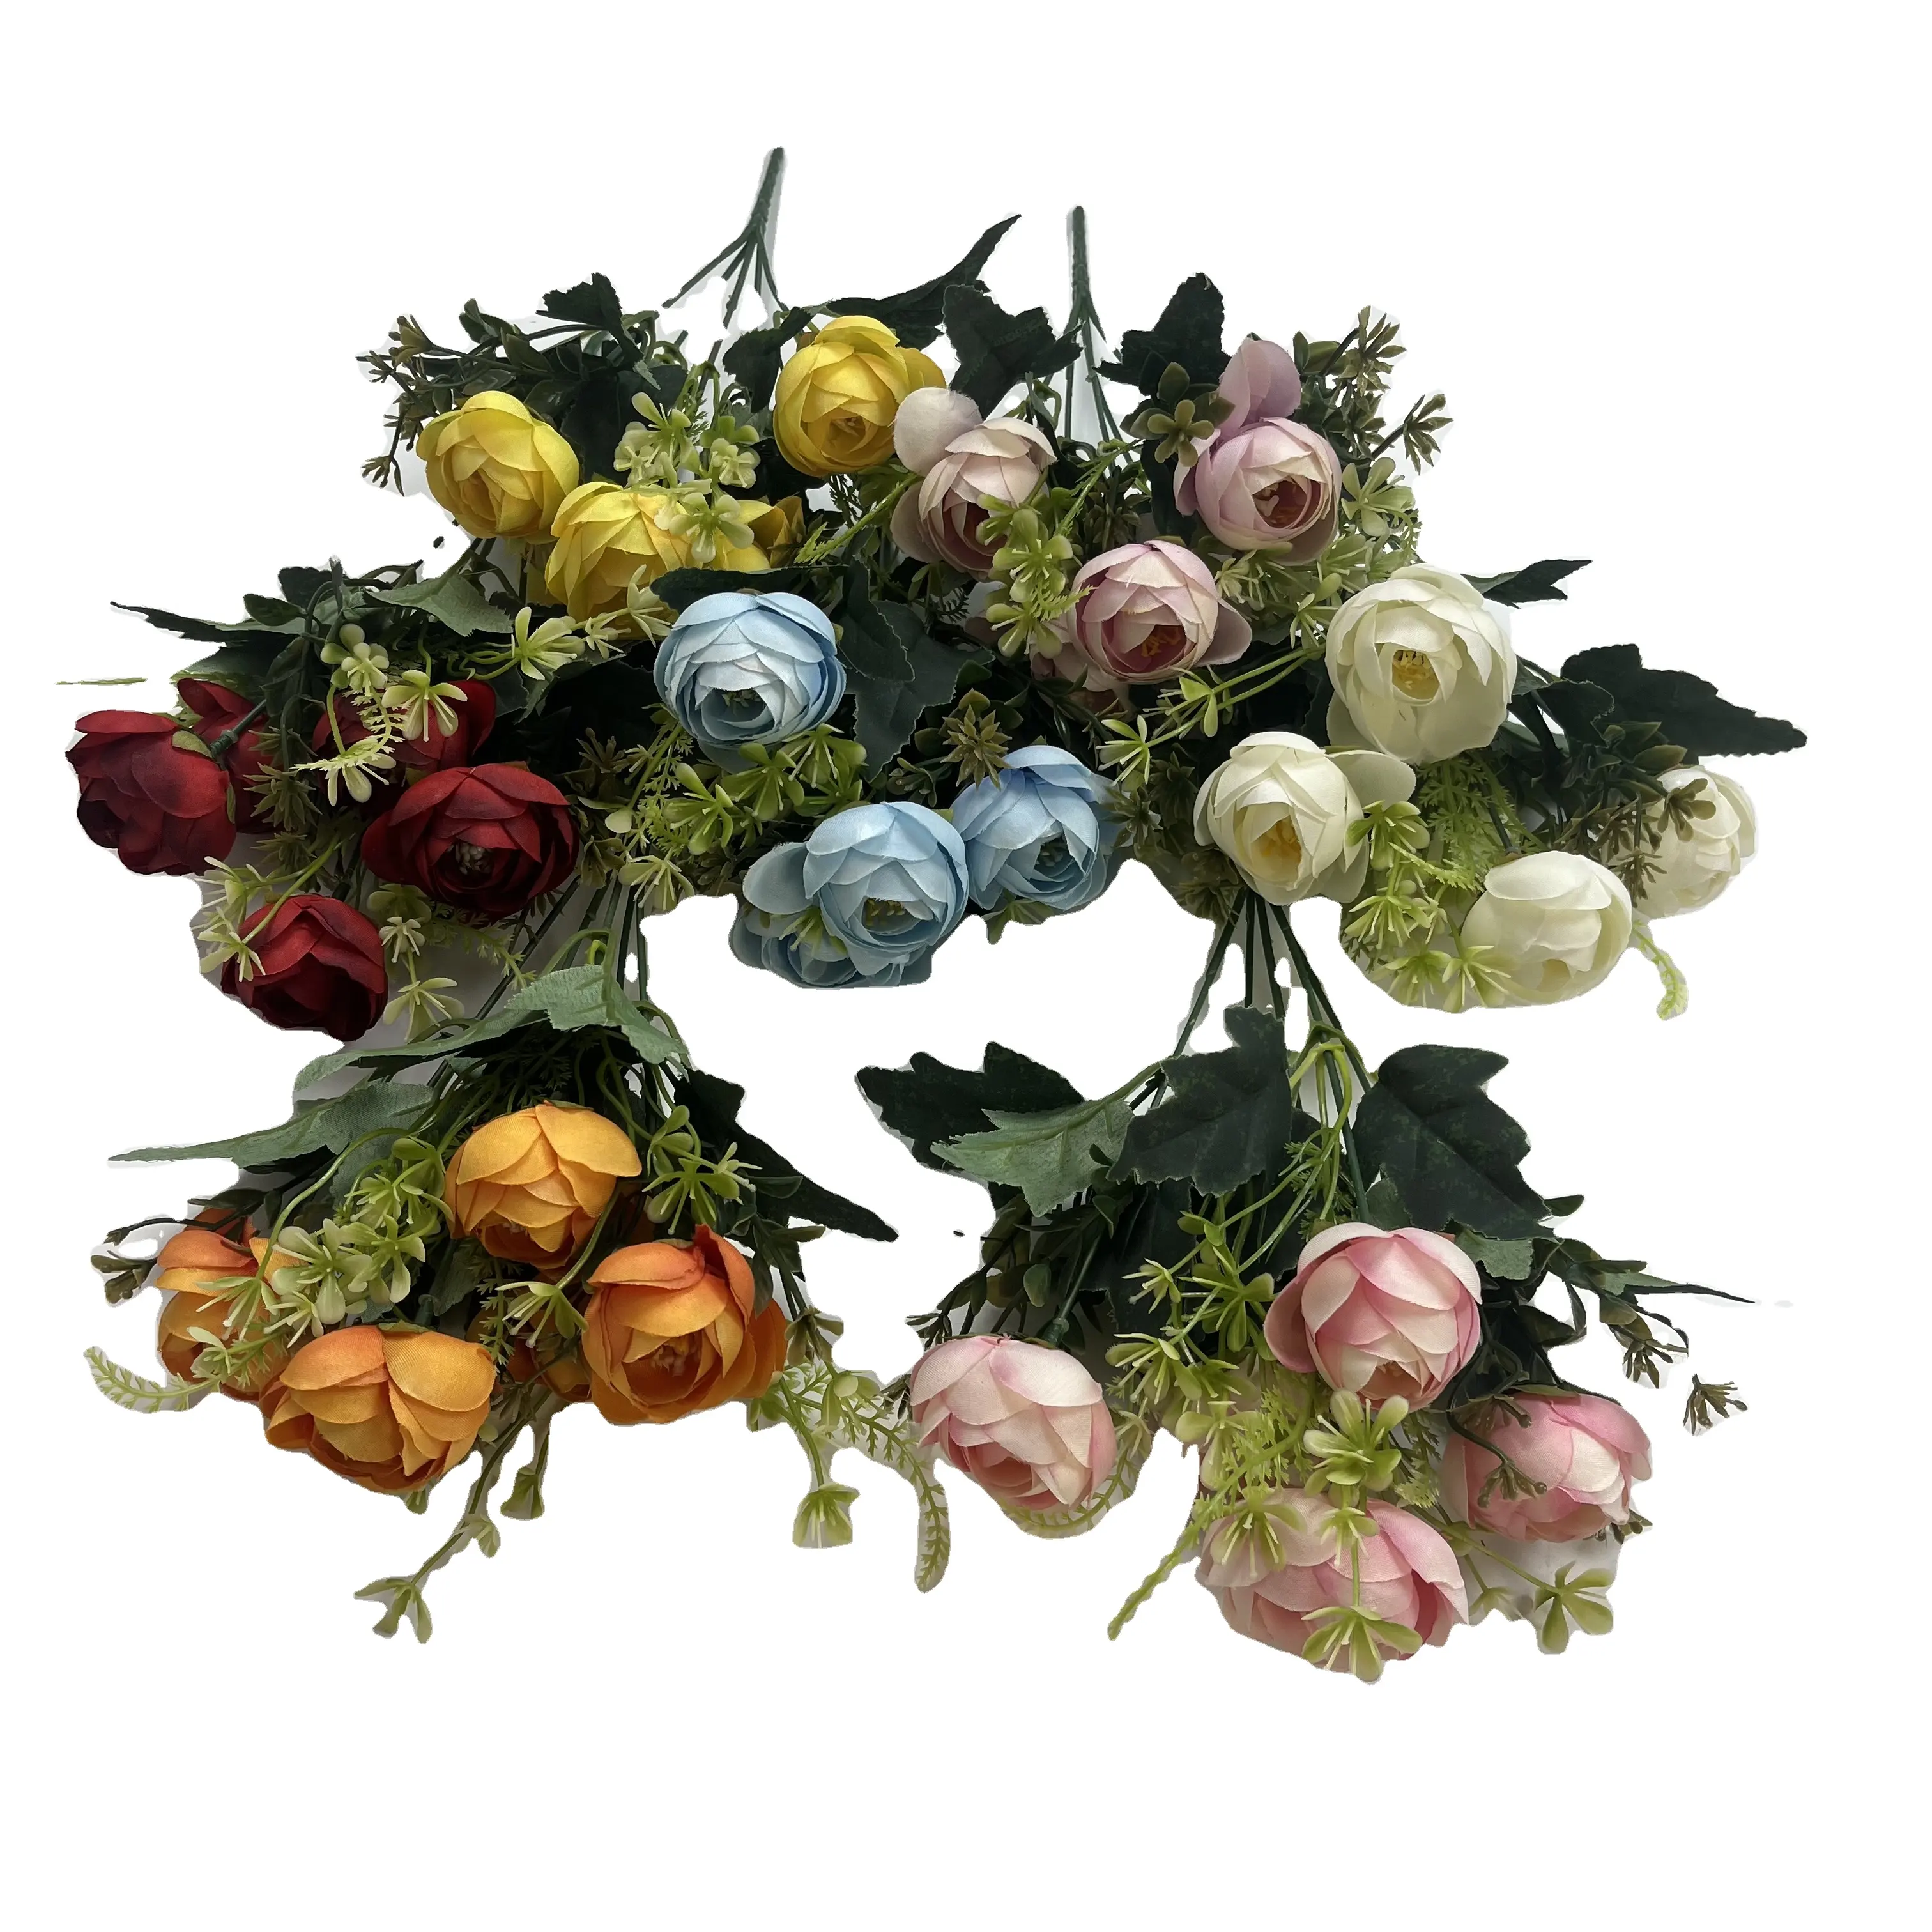 مصنع JH بالجملة 5 حفظات صغيرة من الزهور الفاخرة الملفوفة على شكل قلوب ورود زهور صناعية وردة زهرة